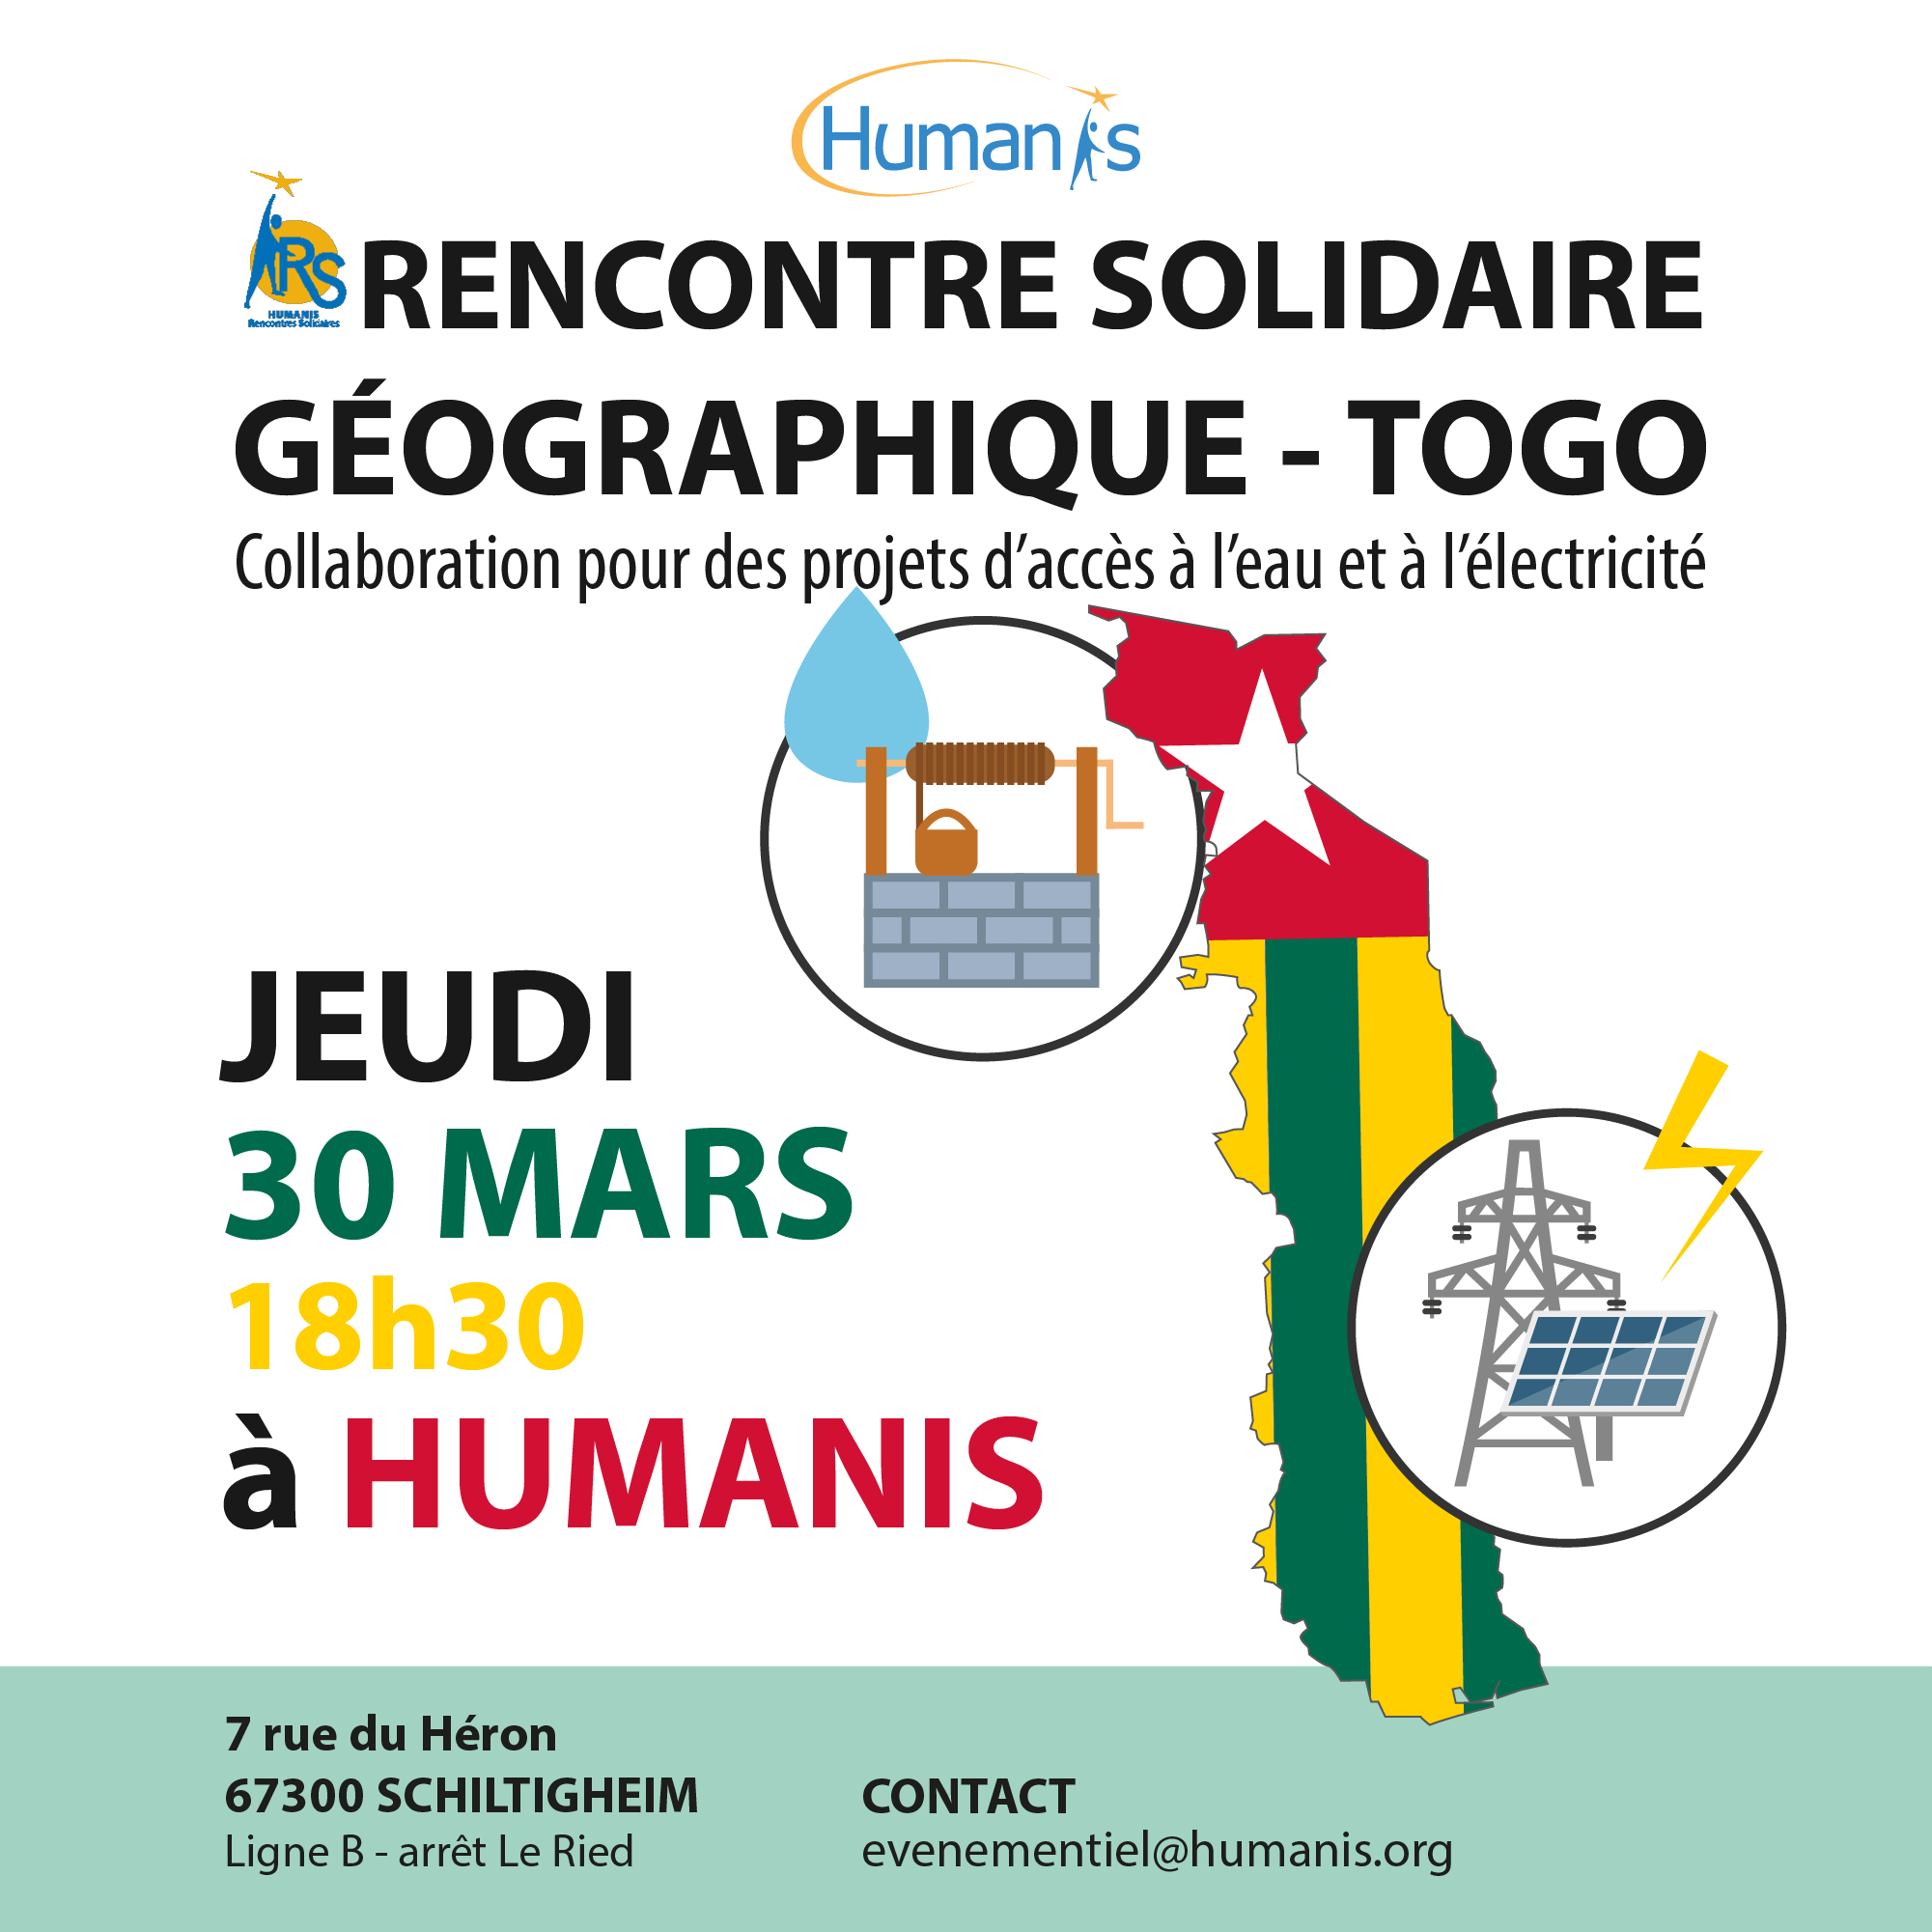 HUMANIS - Rencontre Solidaire géographique Togo